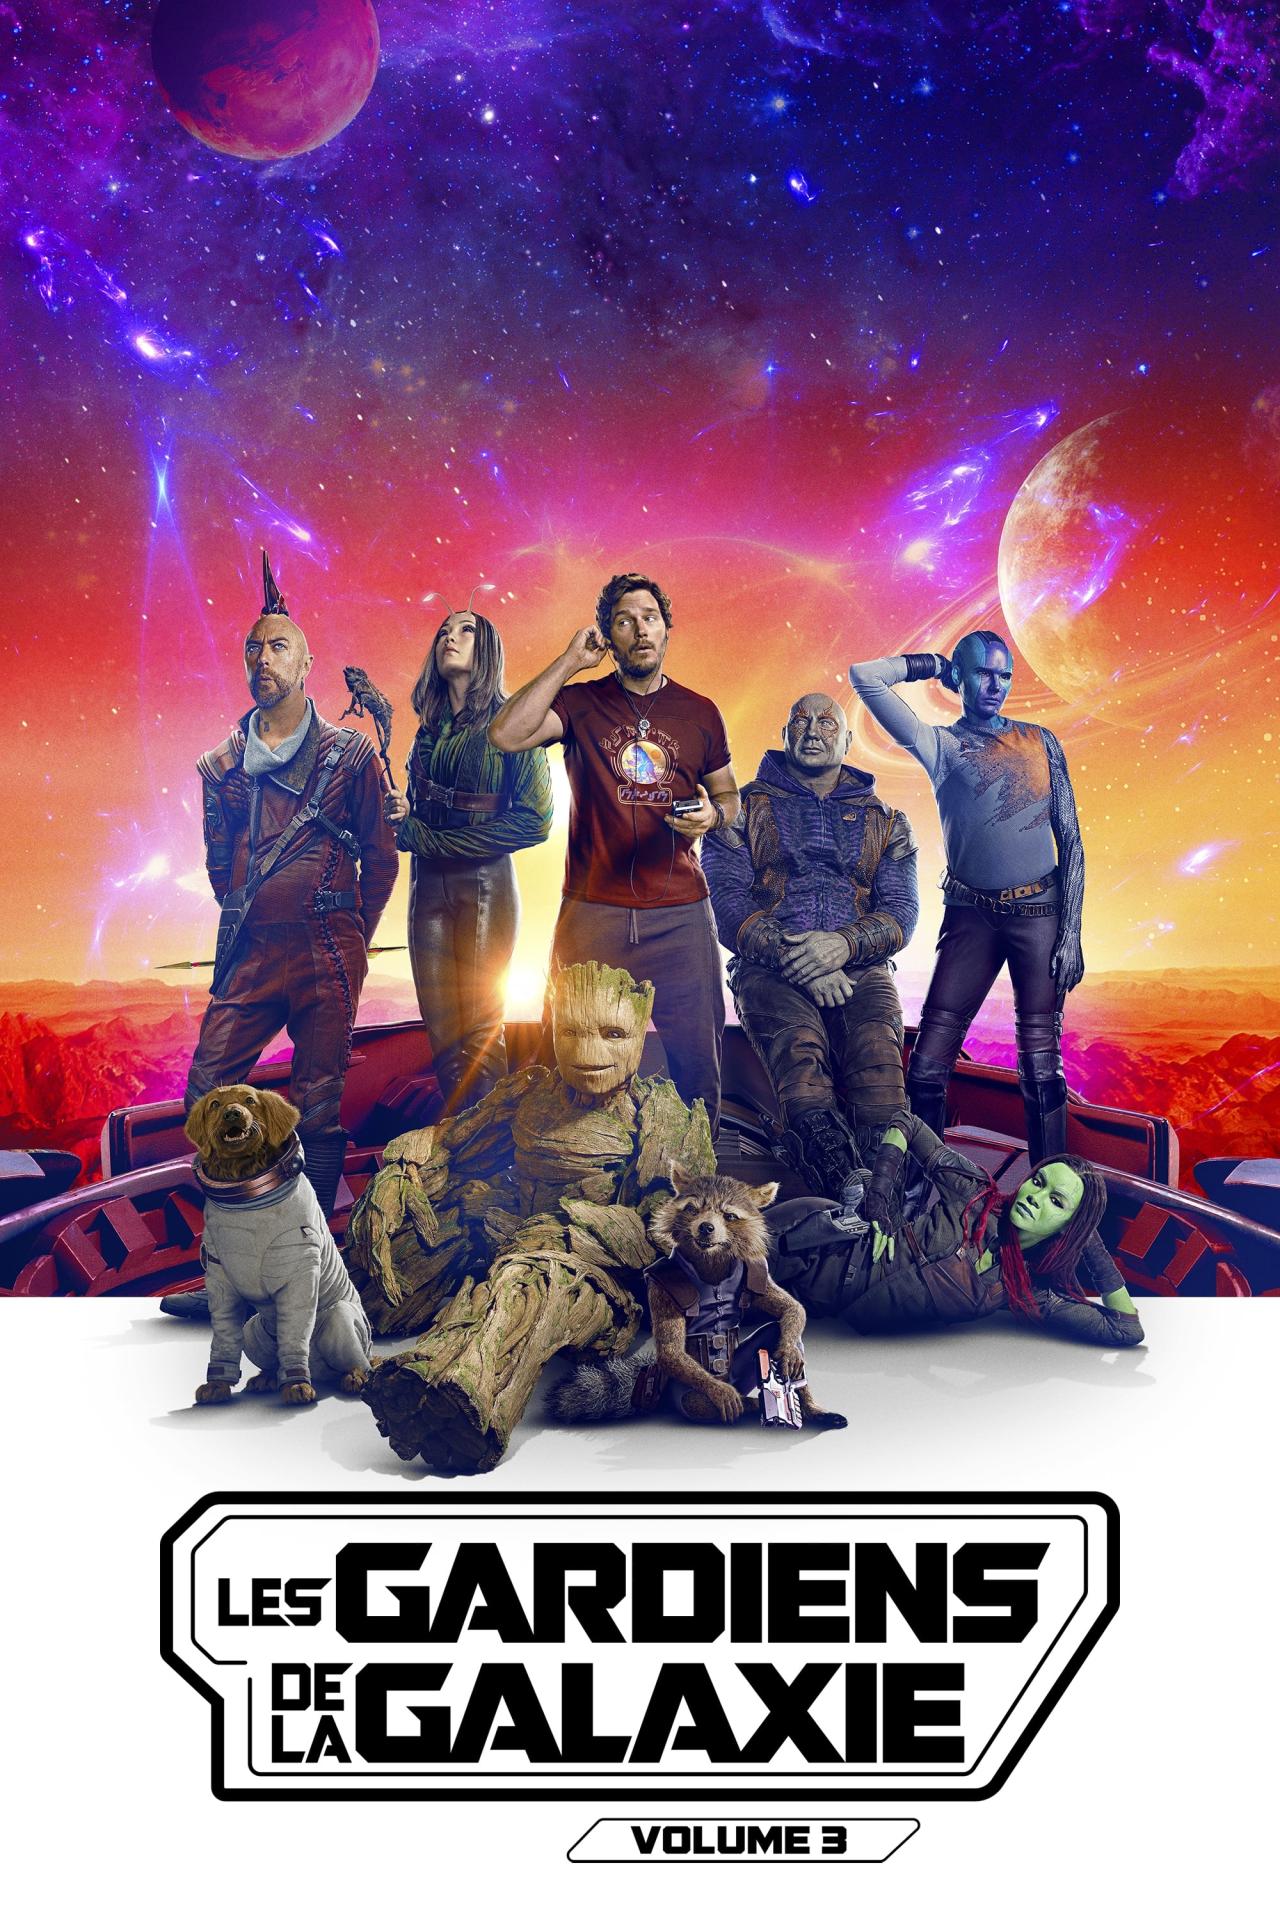 Les Gardiens de la Galaxie : Volume 3 est-il disponible sur Netflix ou autre ?